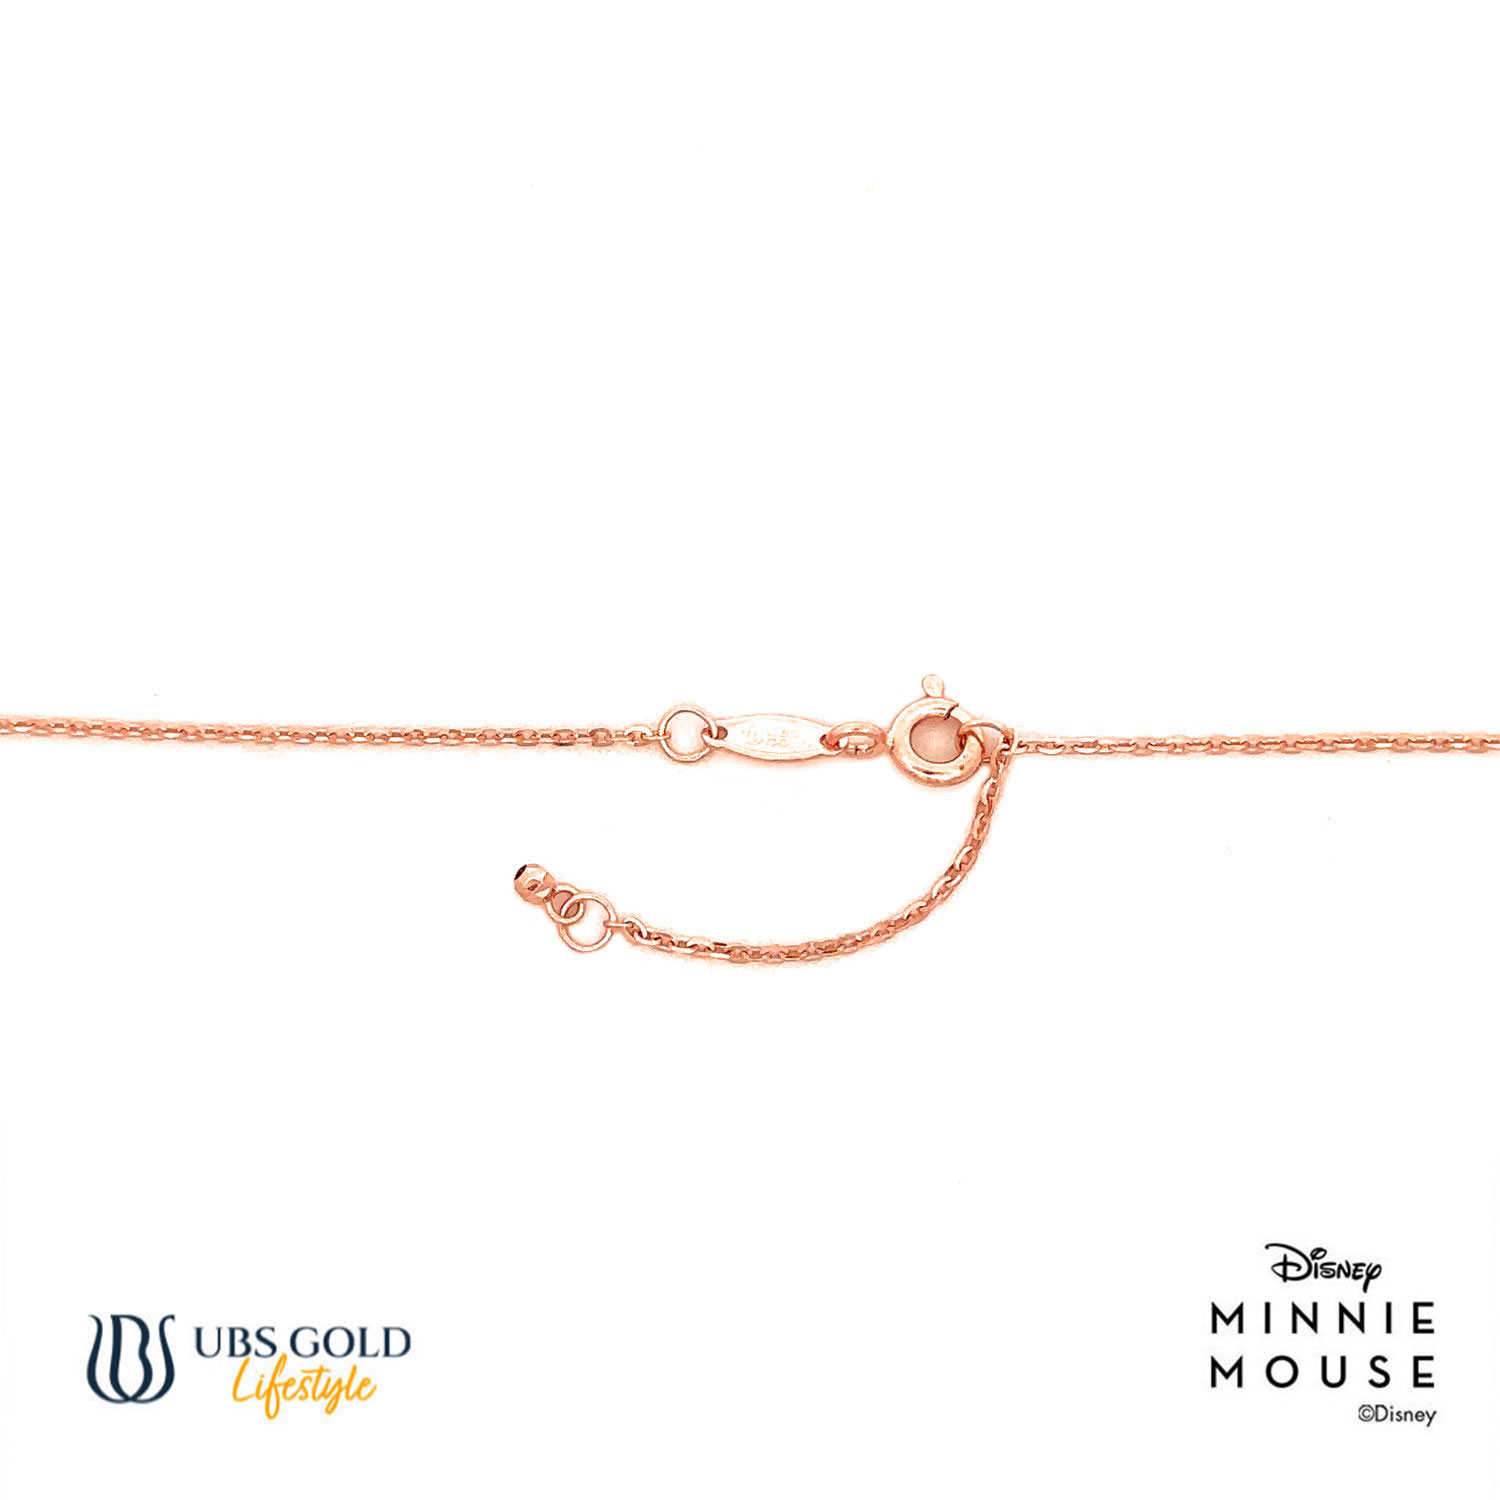 UBS Gold Kalung Emas Disney Minnie Mouse - Kky0499 - 17K